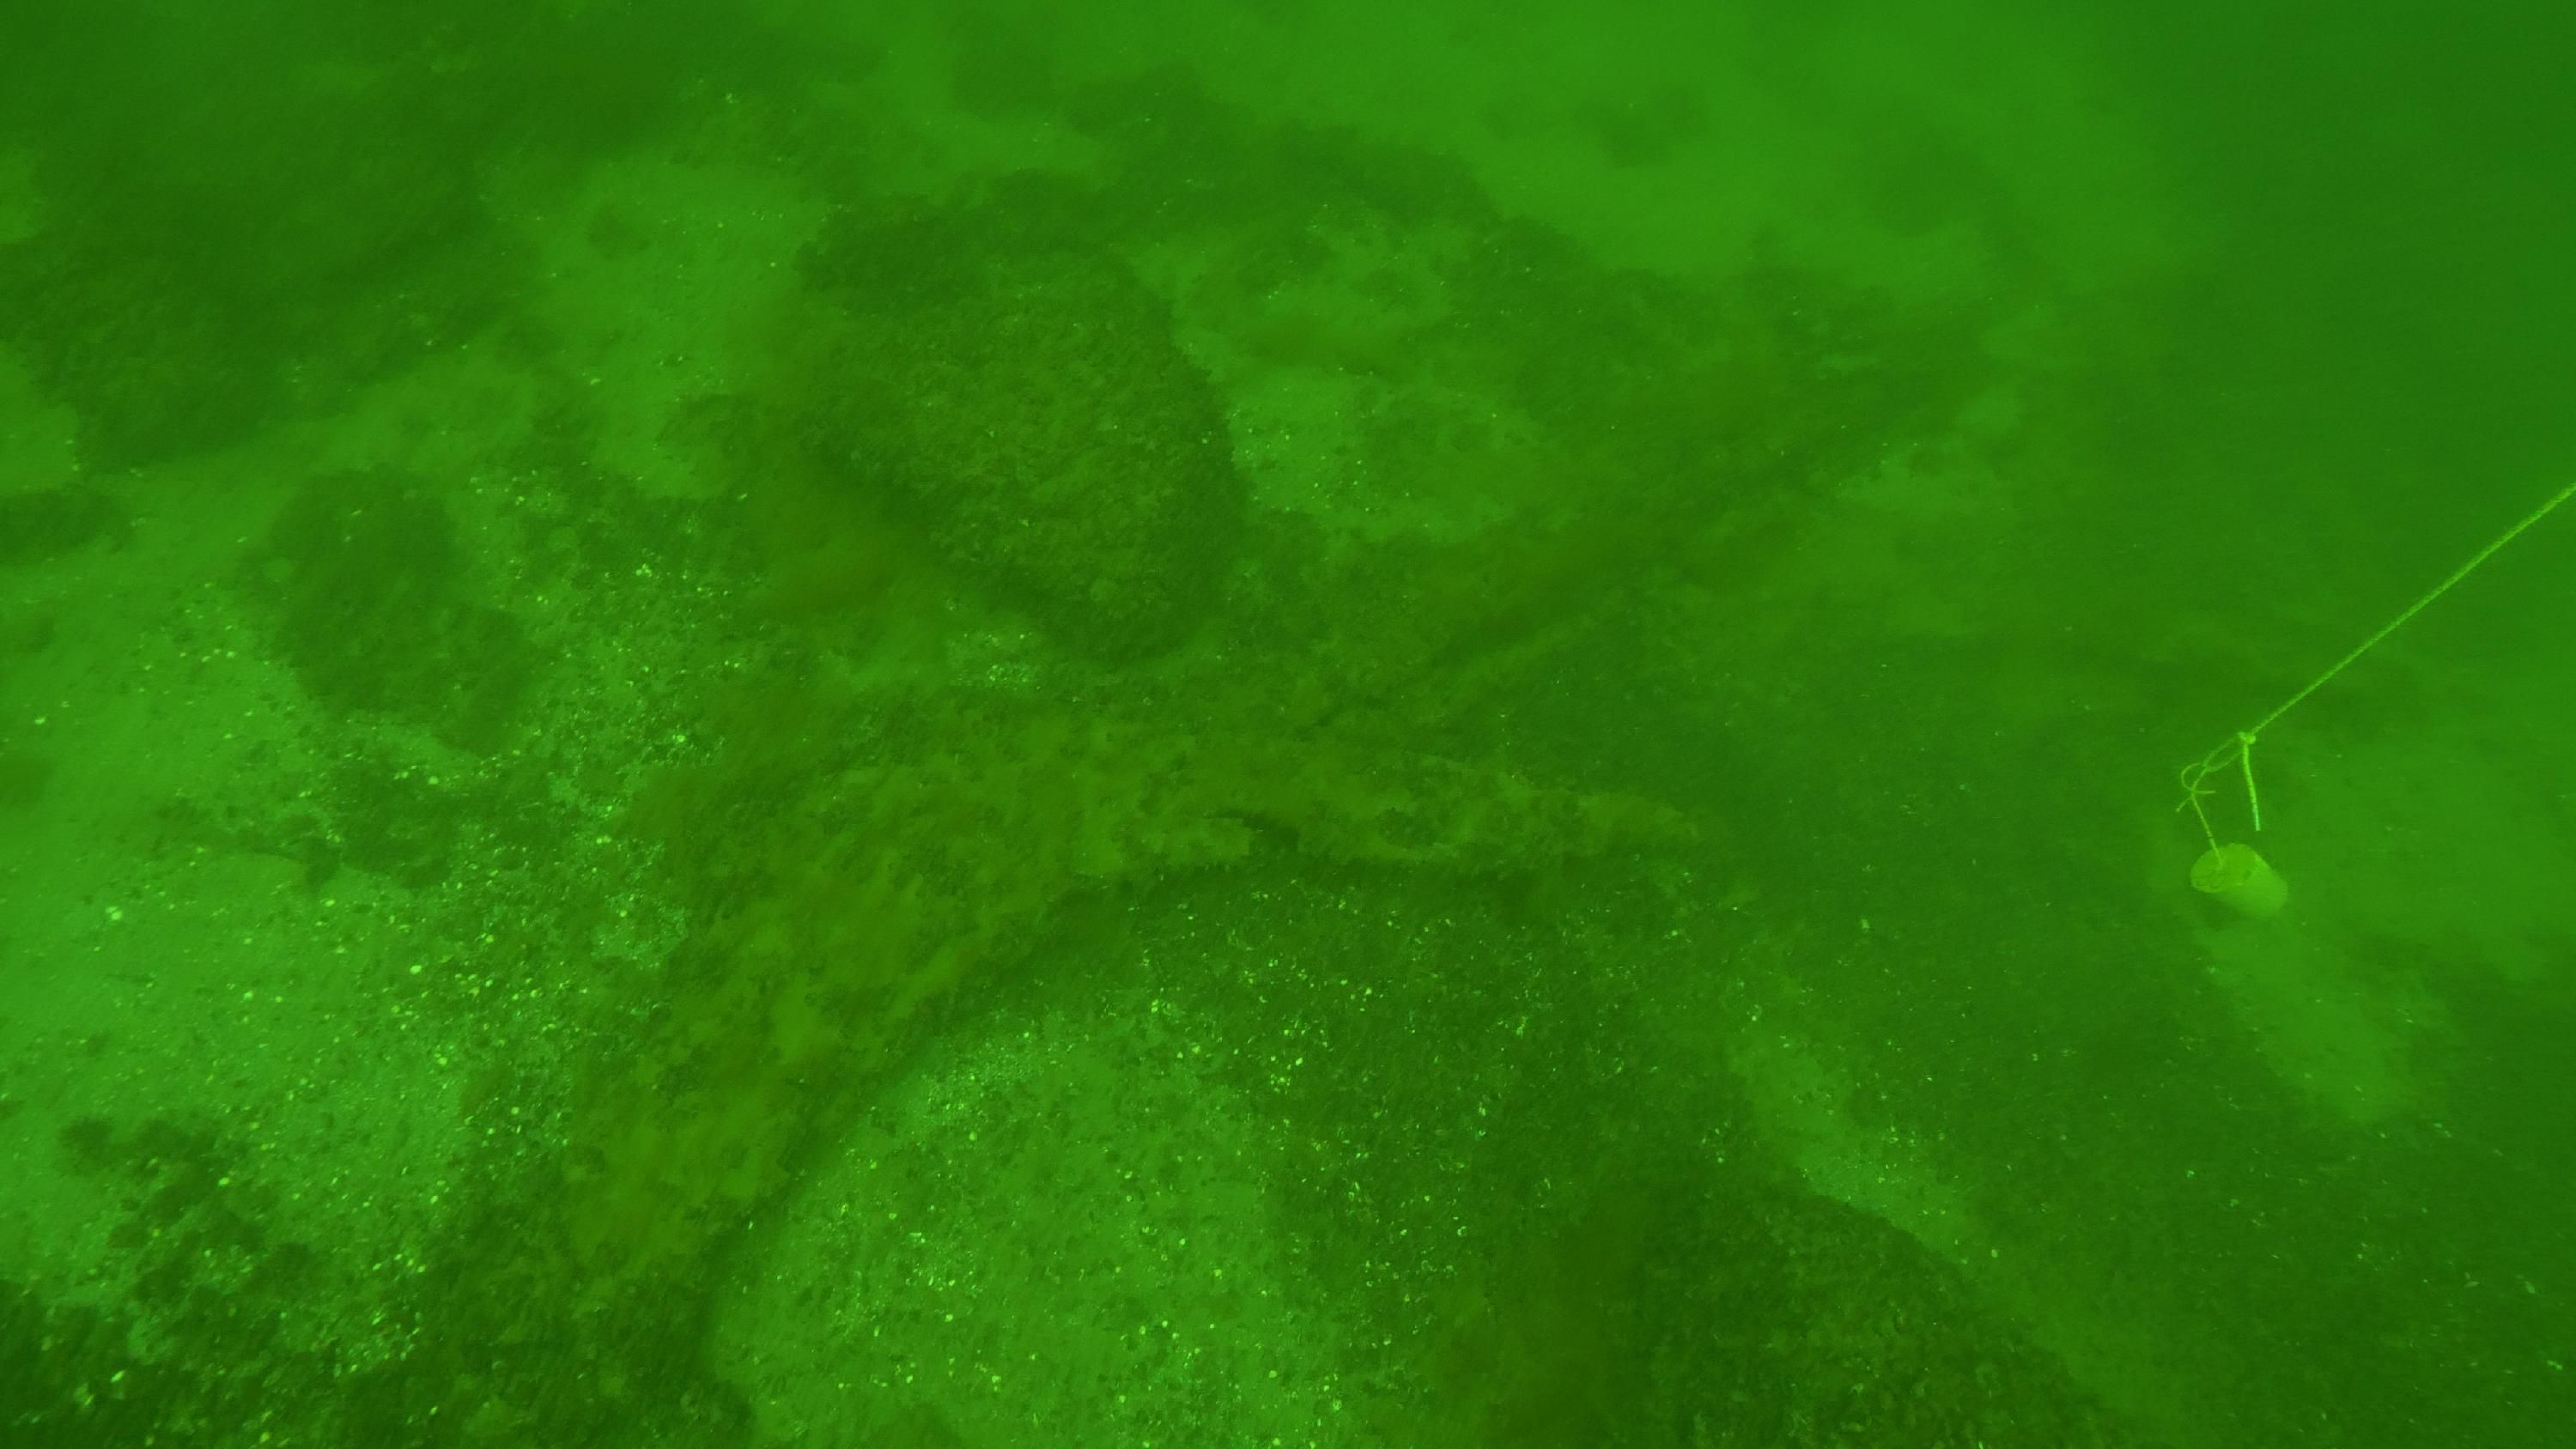 Kuva: Vidskärin hylyn irrallisia rakenneosia meren pohjassa. Kuvakaappaus vedenalaisvideolta. Riikka Tevali 11.5.2019